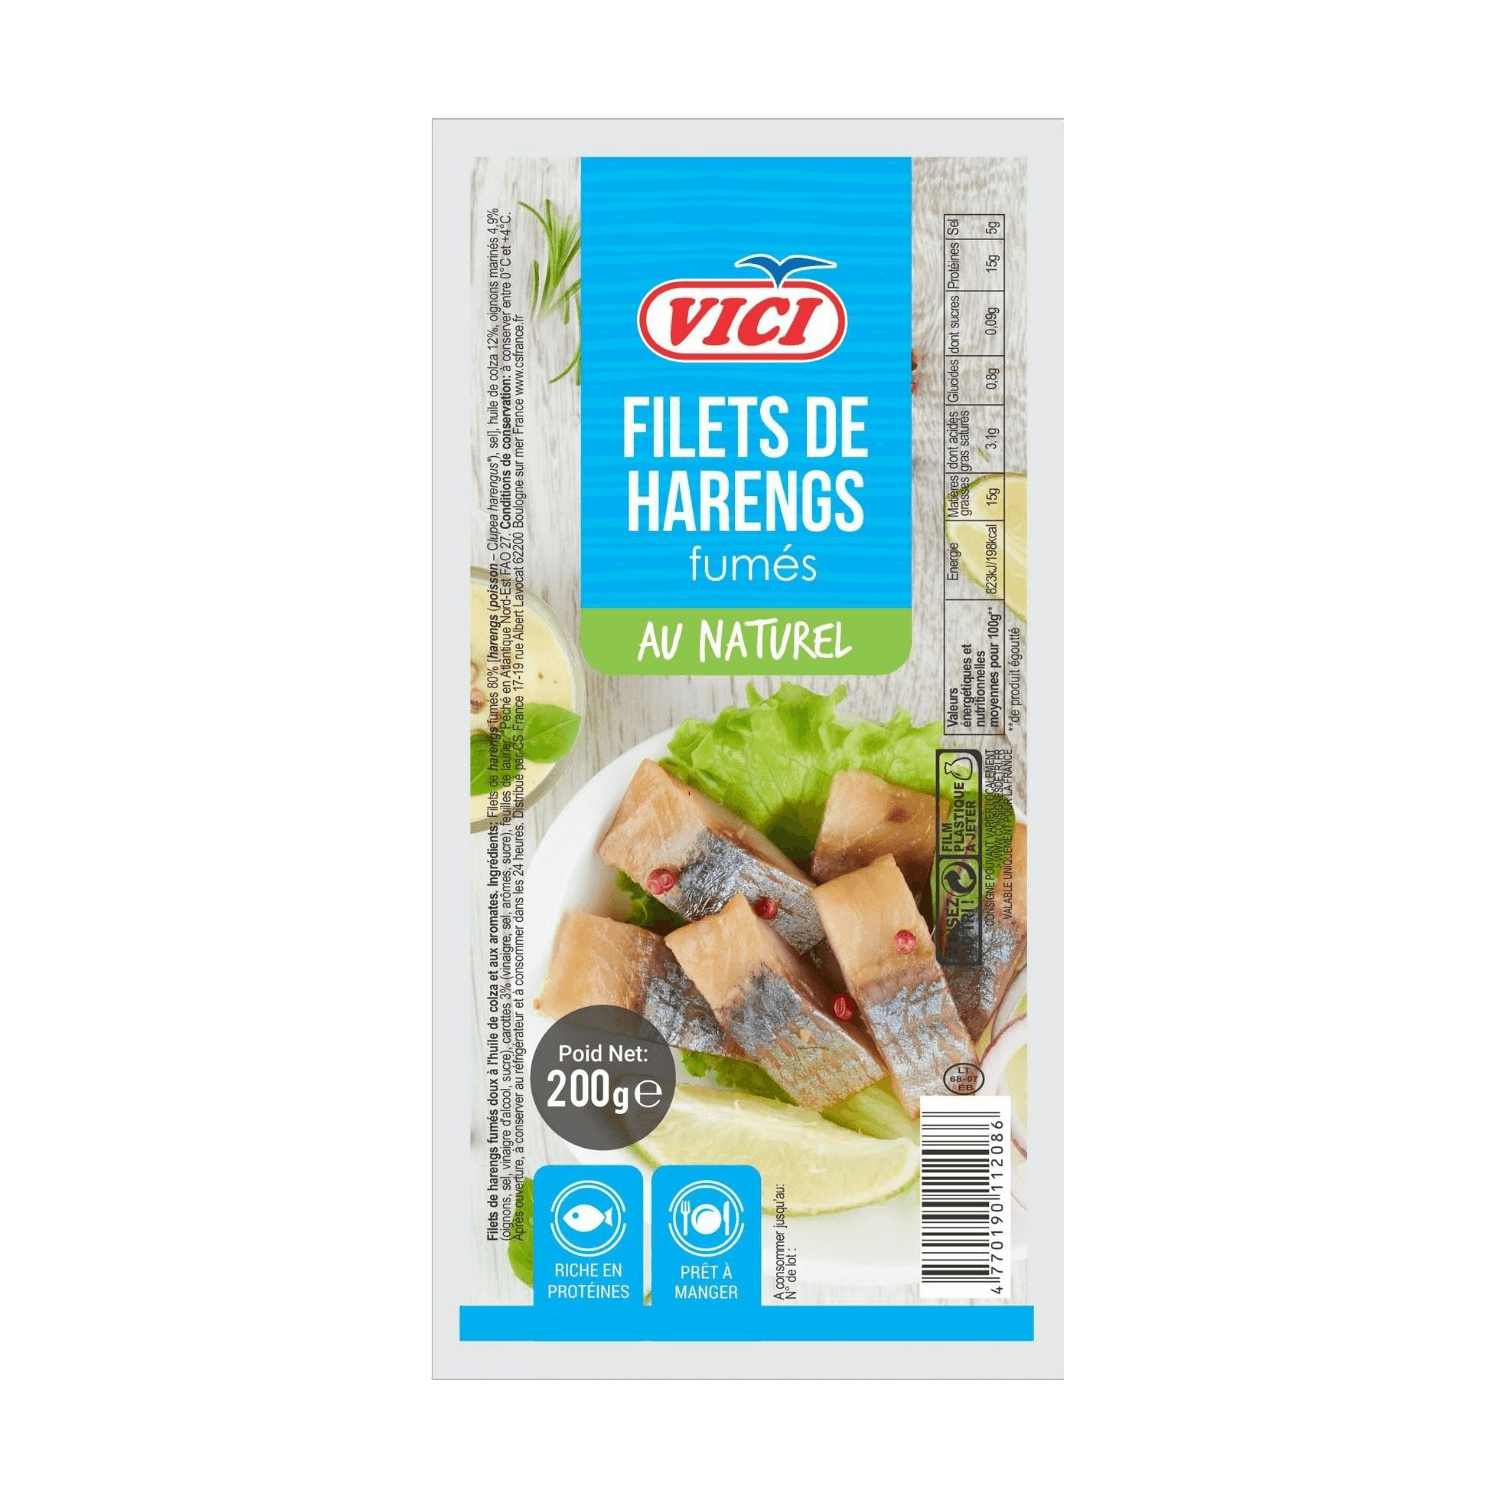 Pro-Inter | Vici 200g | Filets de harengs fumés au naturel 